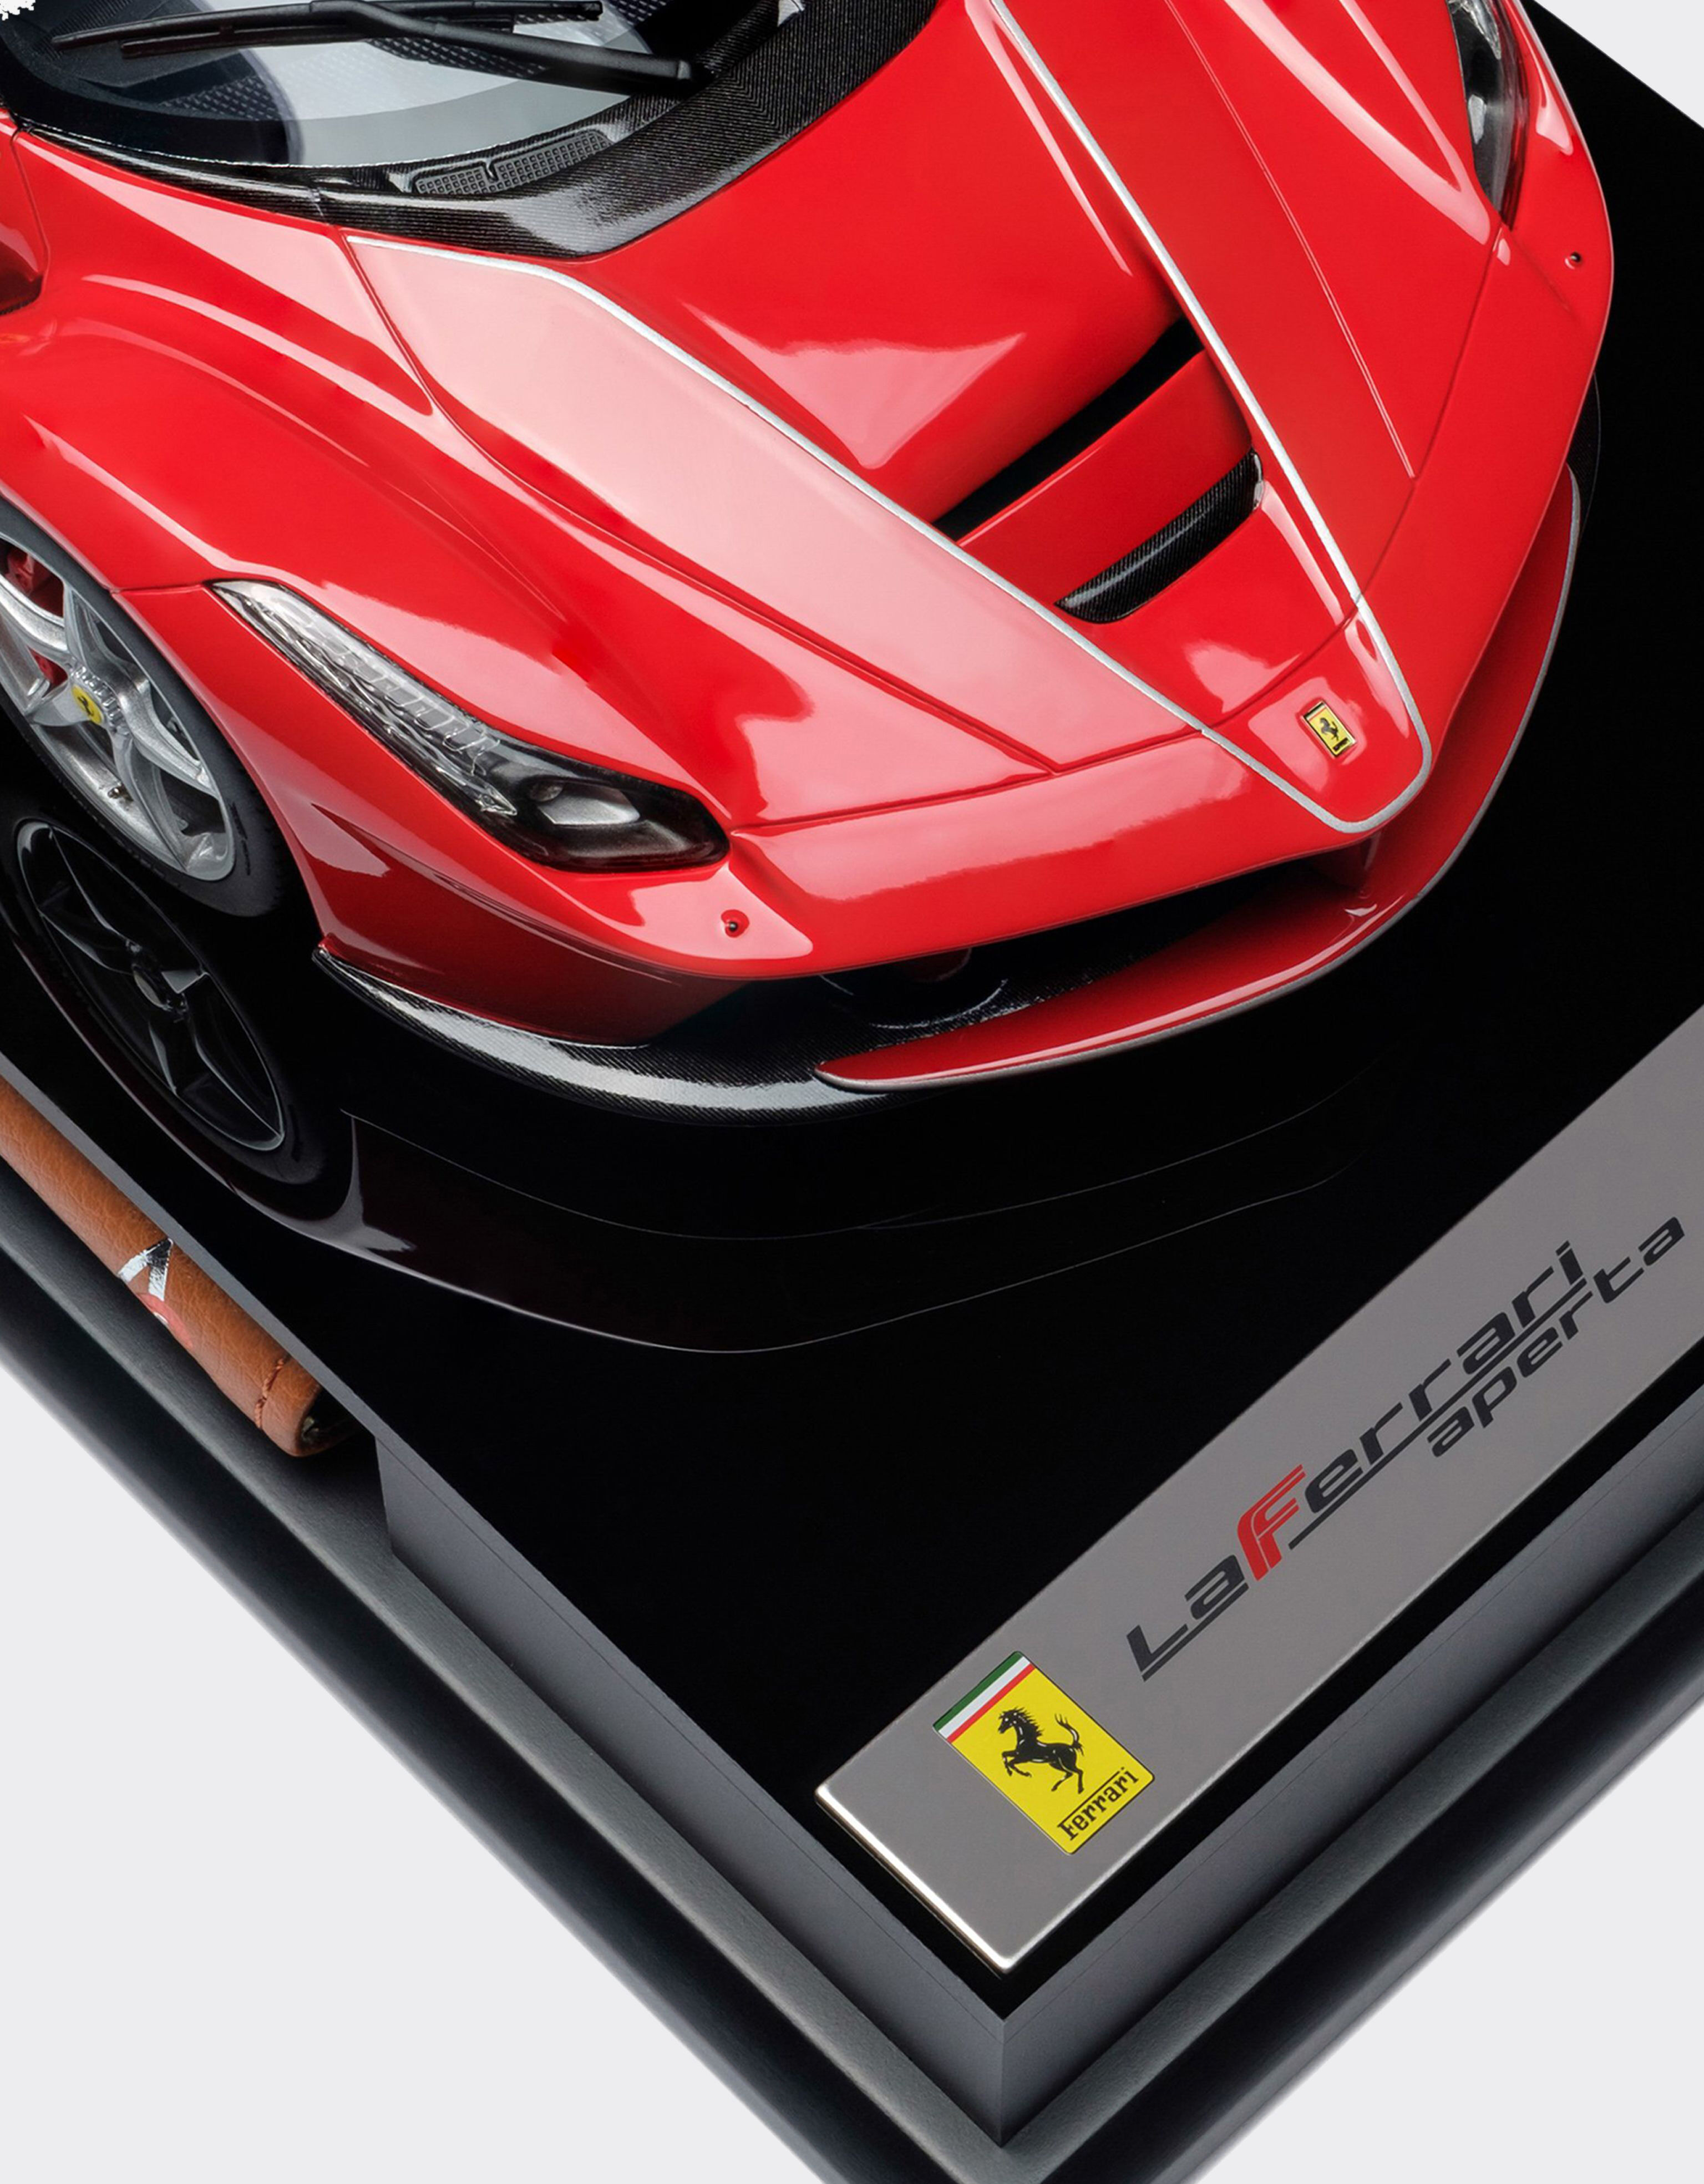 Ferrari Modello LaFerrari Aperta in scala 1:18 MULTICOLORE L7595f